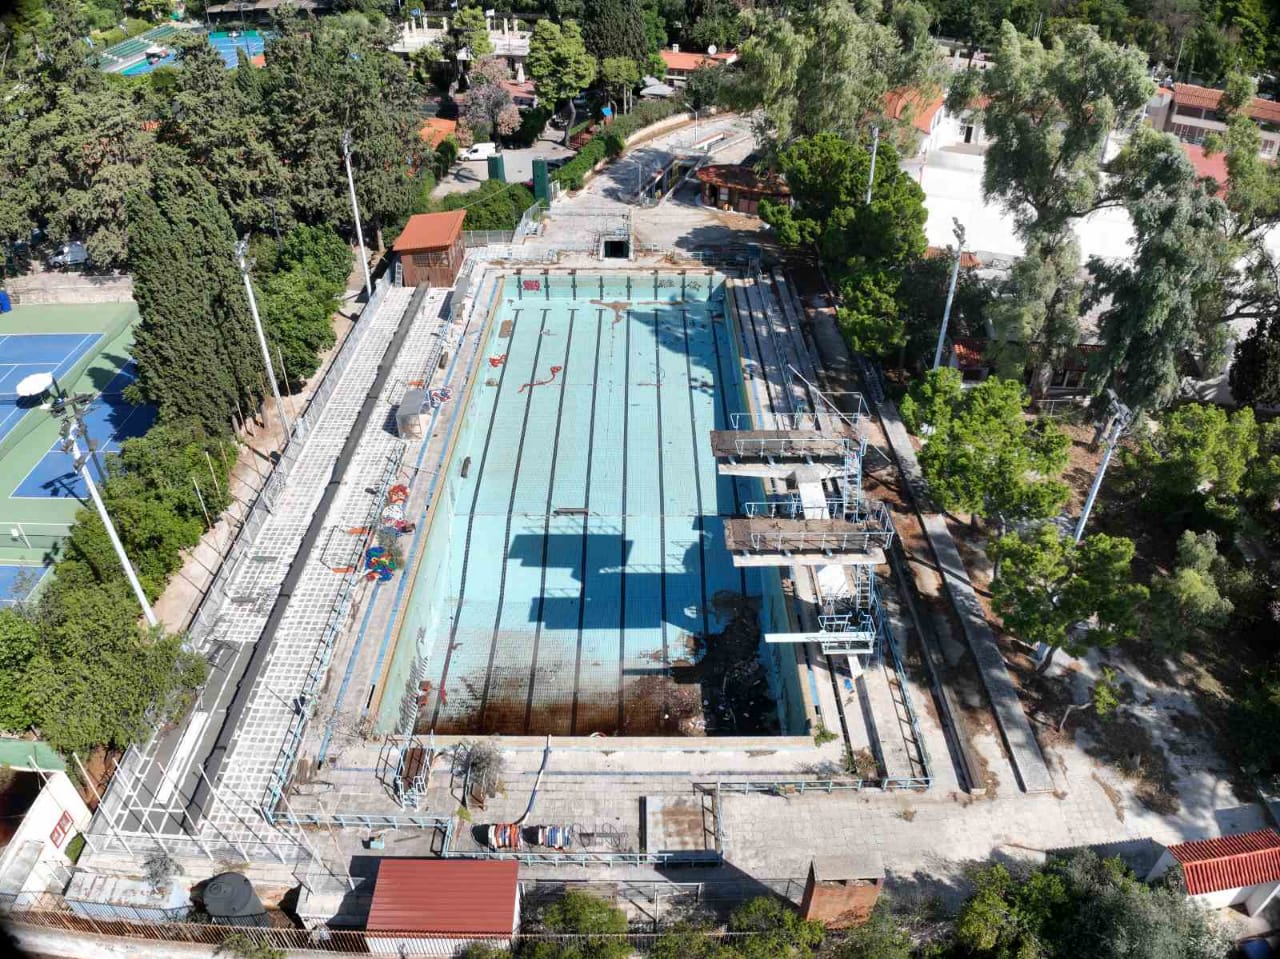 Στον Δήμο Αθηναίων παραχωρείται για 25 χρόνια το Ολυμπιακό Κολυμβητήριο του «Ζαππείου»